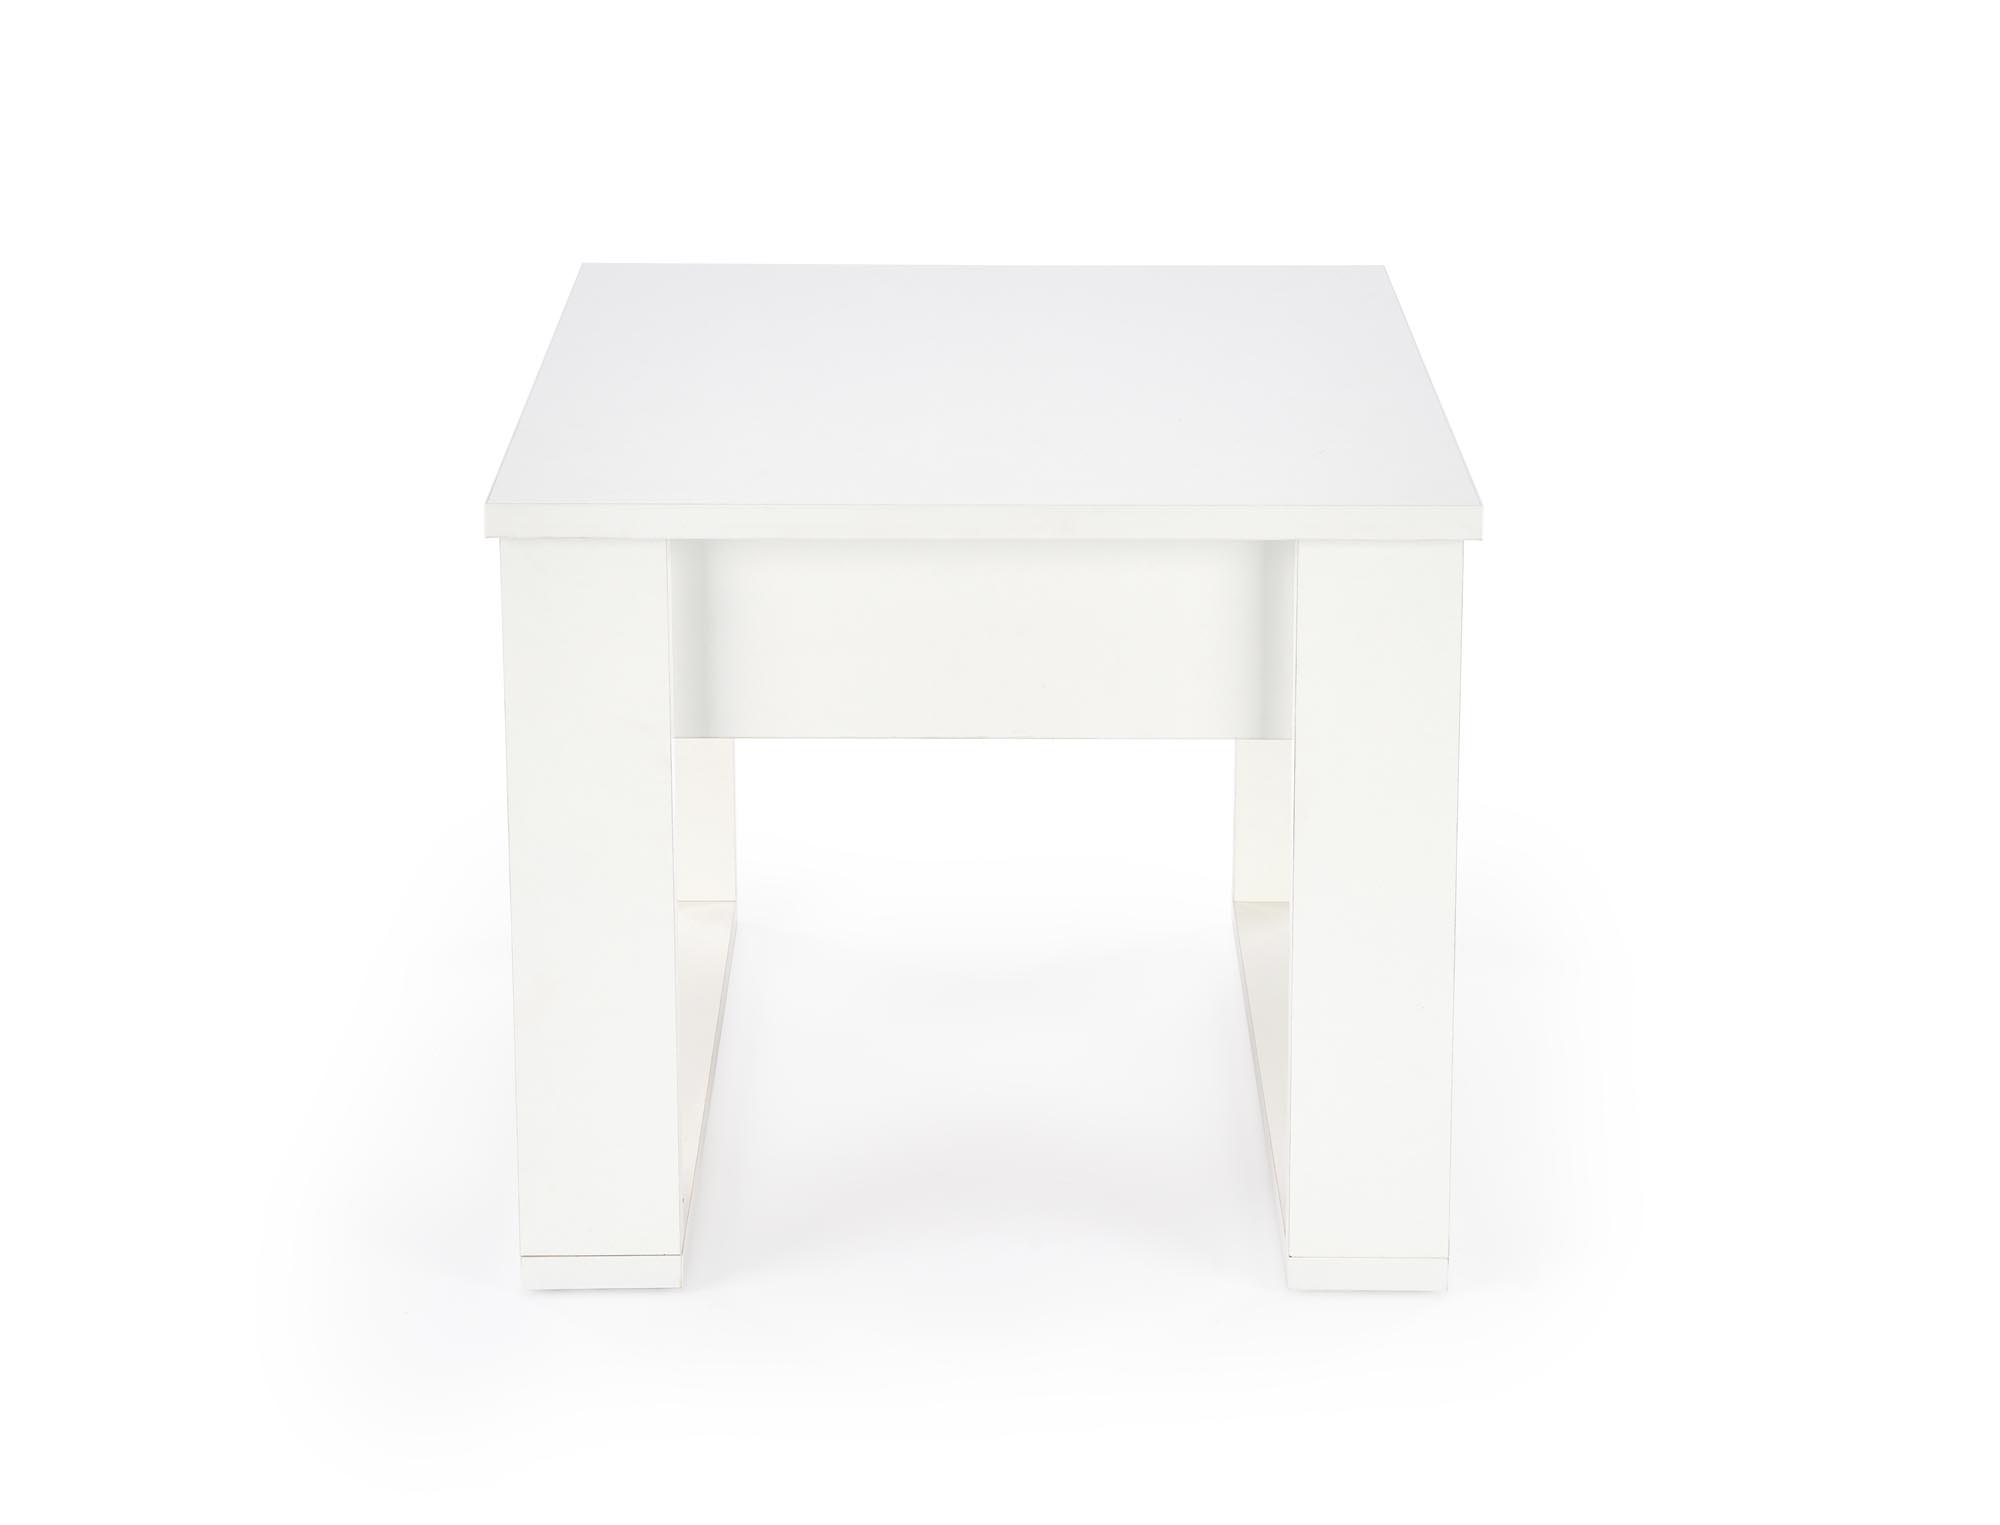 Stolik kawowy Nea Kwadrat - kolor biały stolik kawowy nea kwadrat - kolor biały